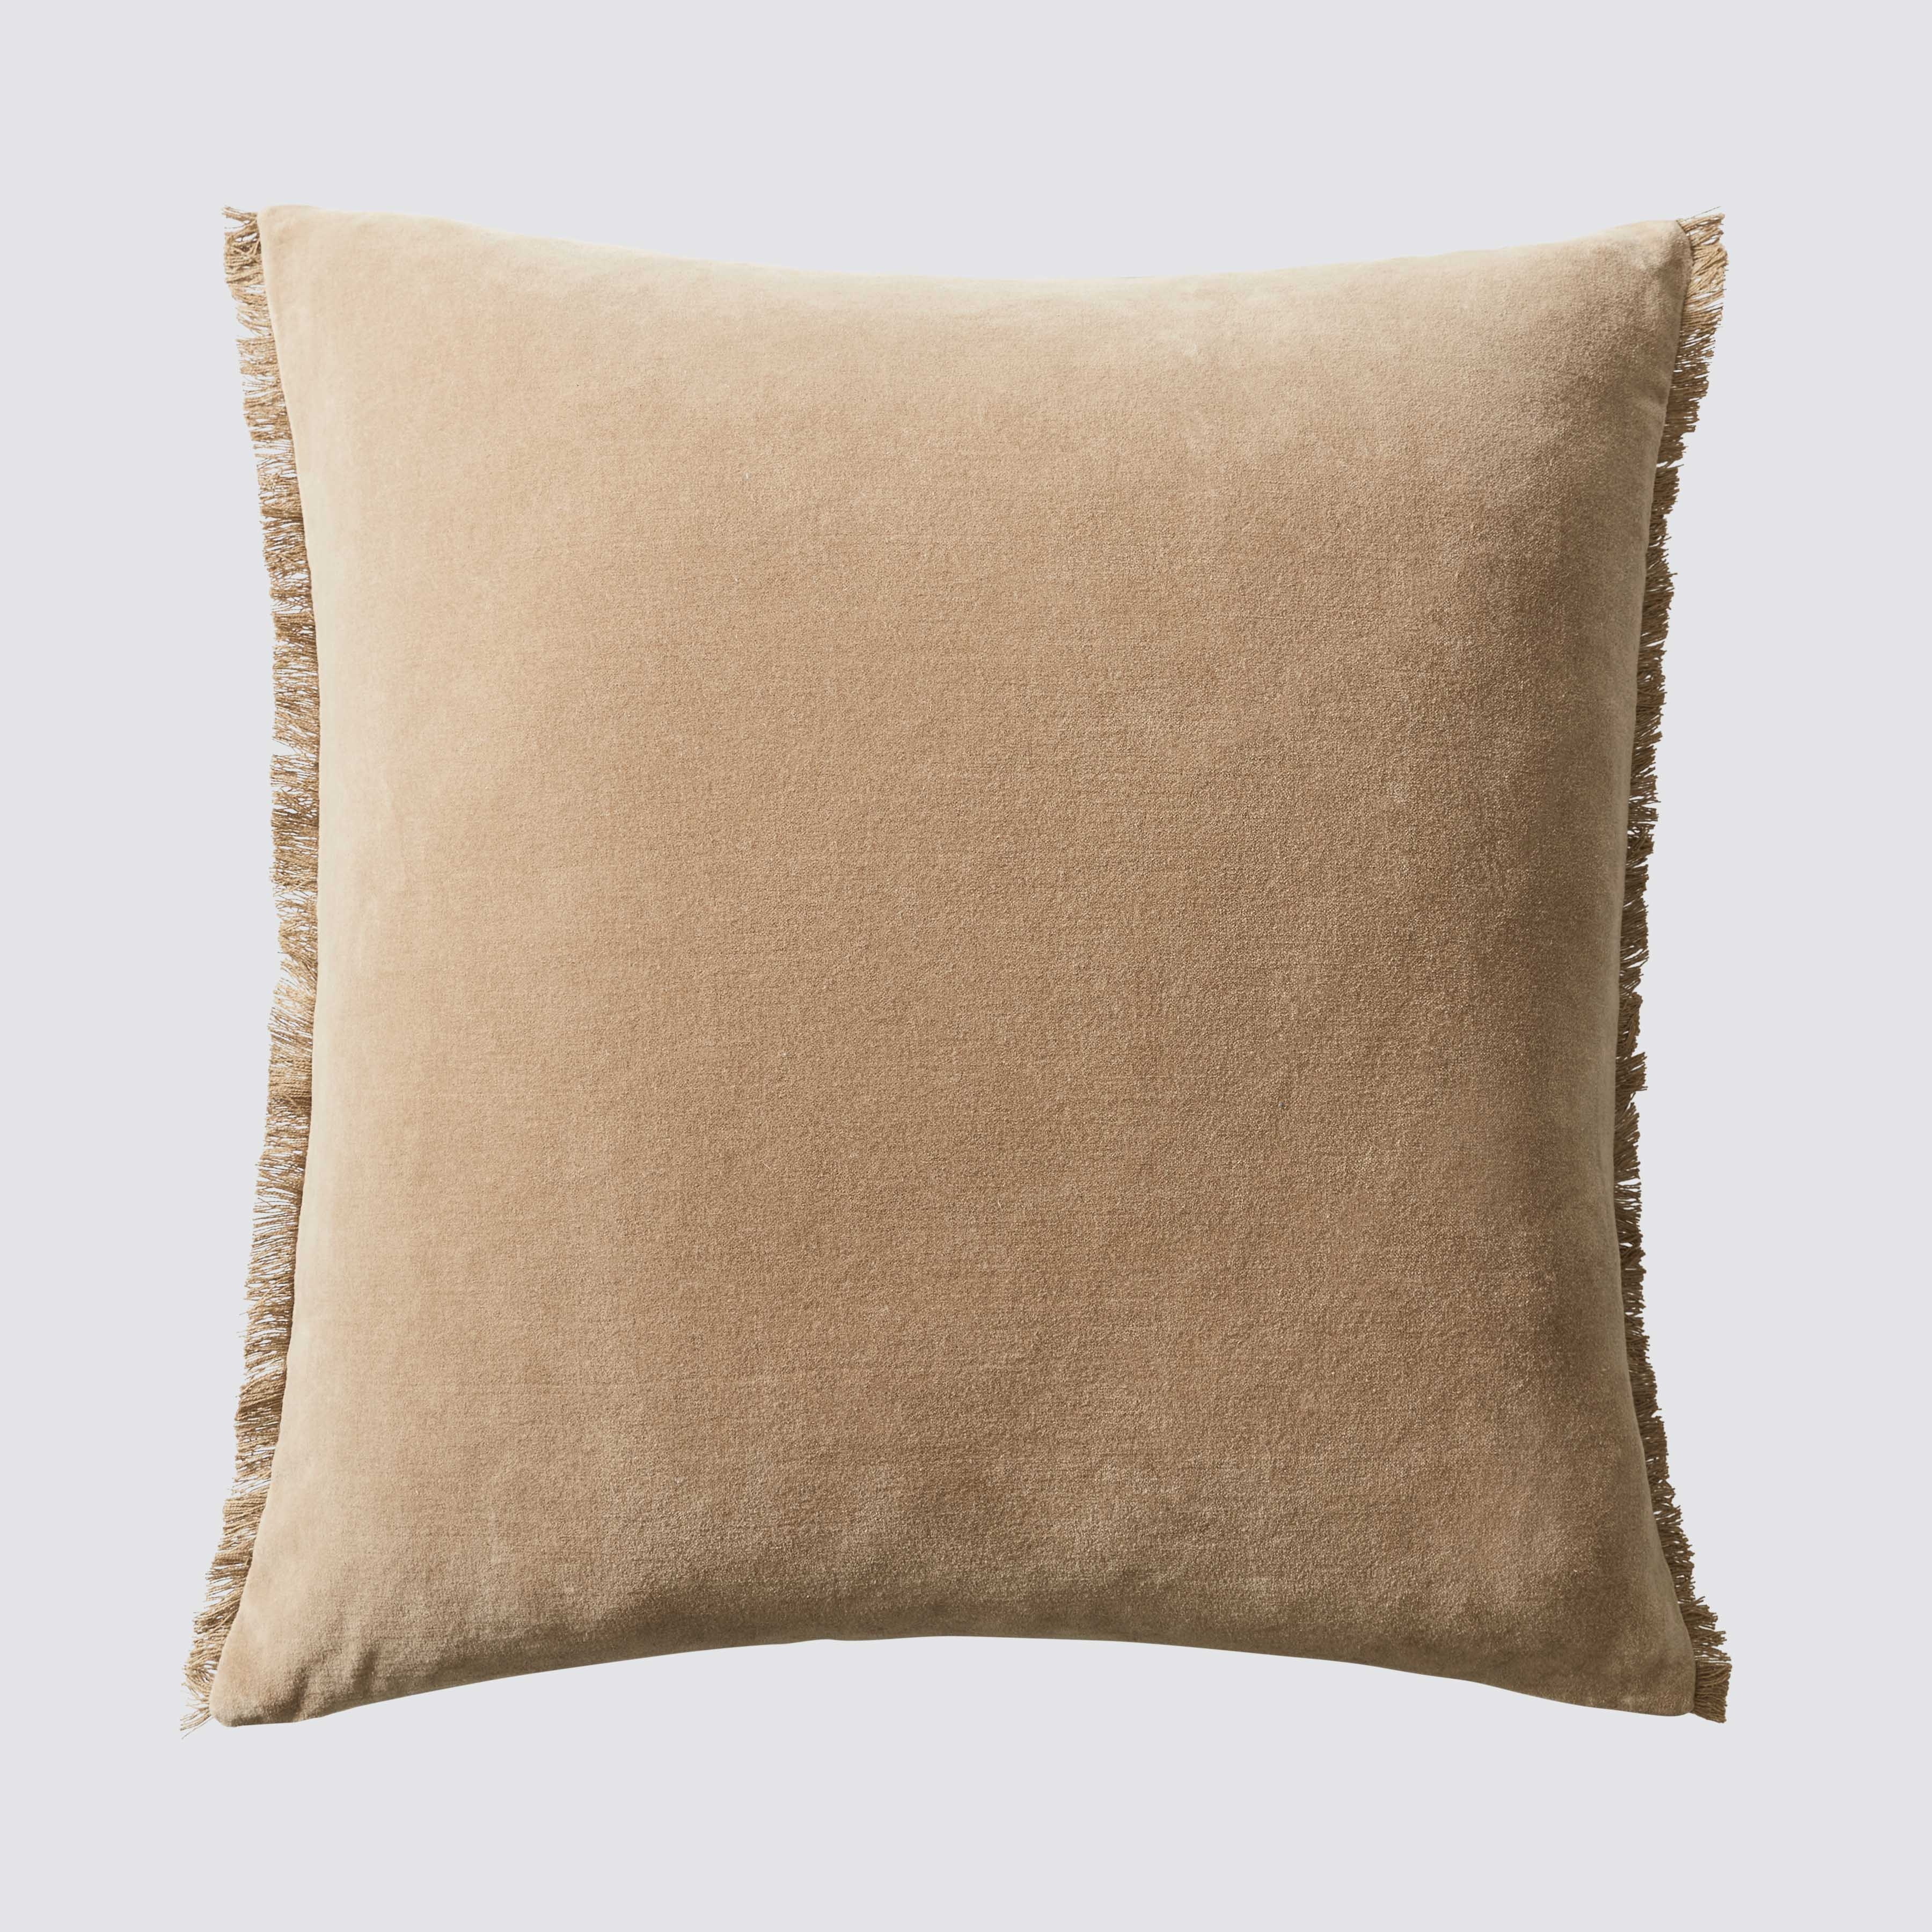 The Citizenry Naveta Velvet Pillow | 18" x 18" | Camel - Image 0